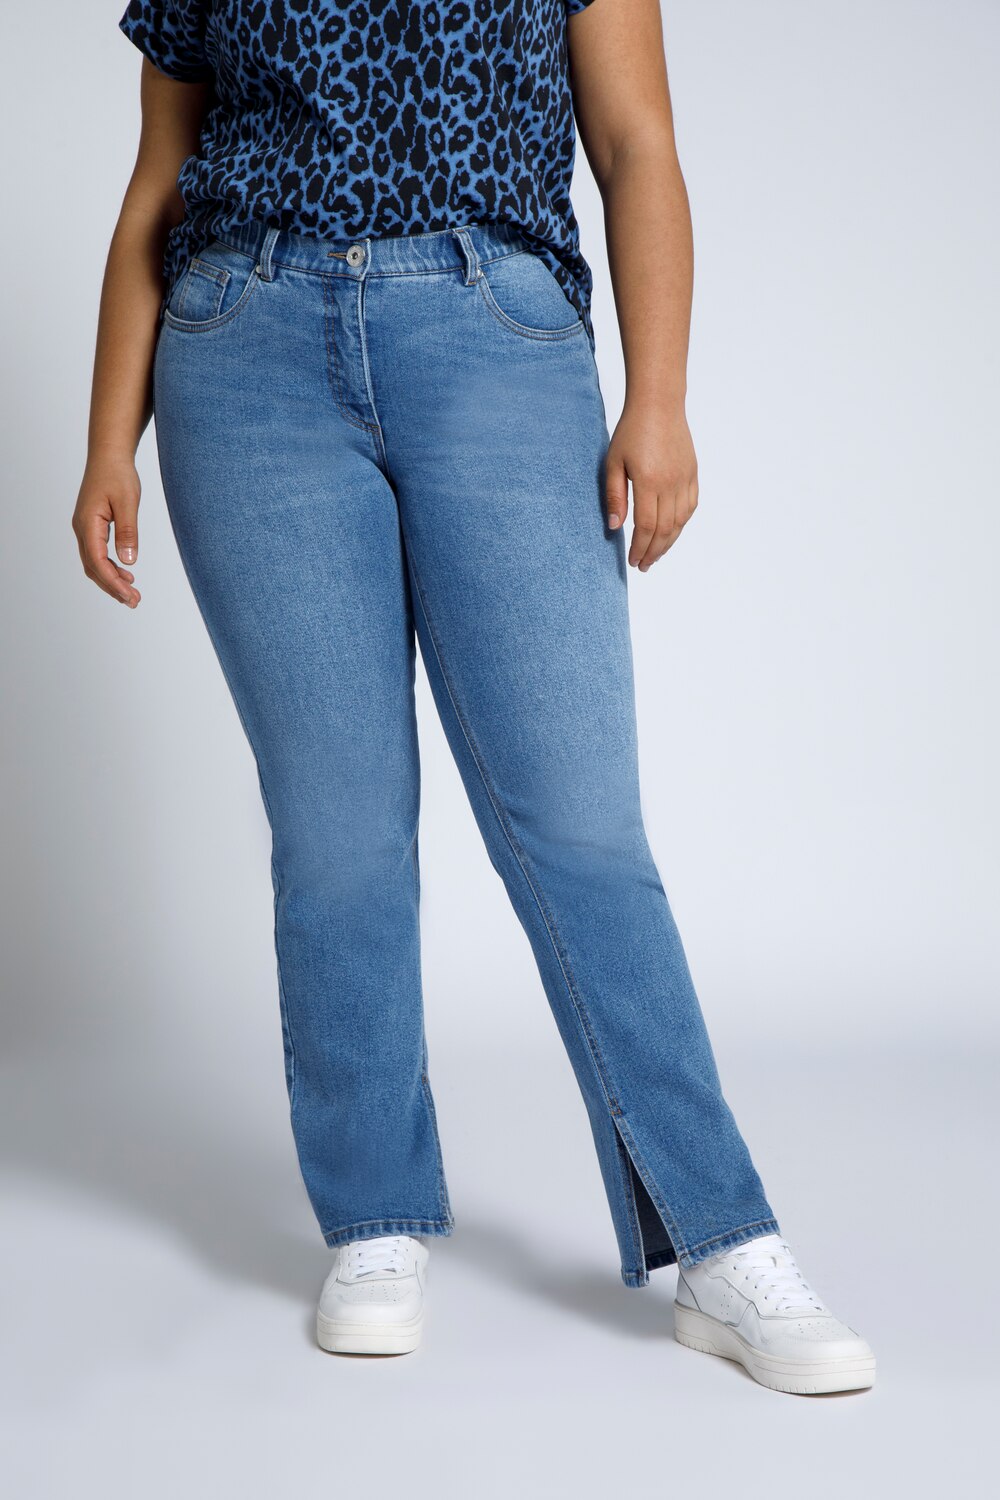 Grote Maten jeans, Dames, blauw, Maat: 54, Katoen, Studio Untold